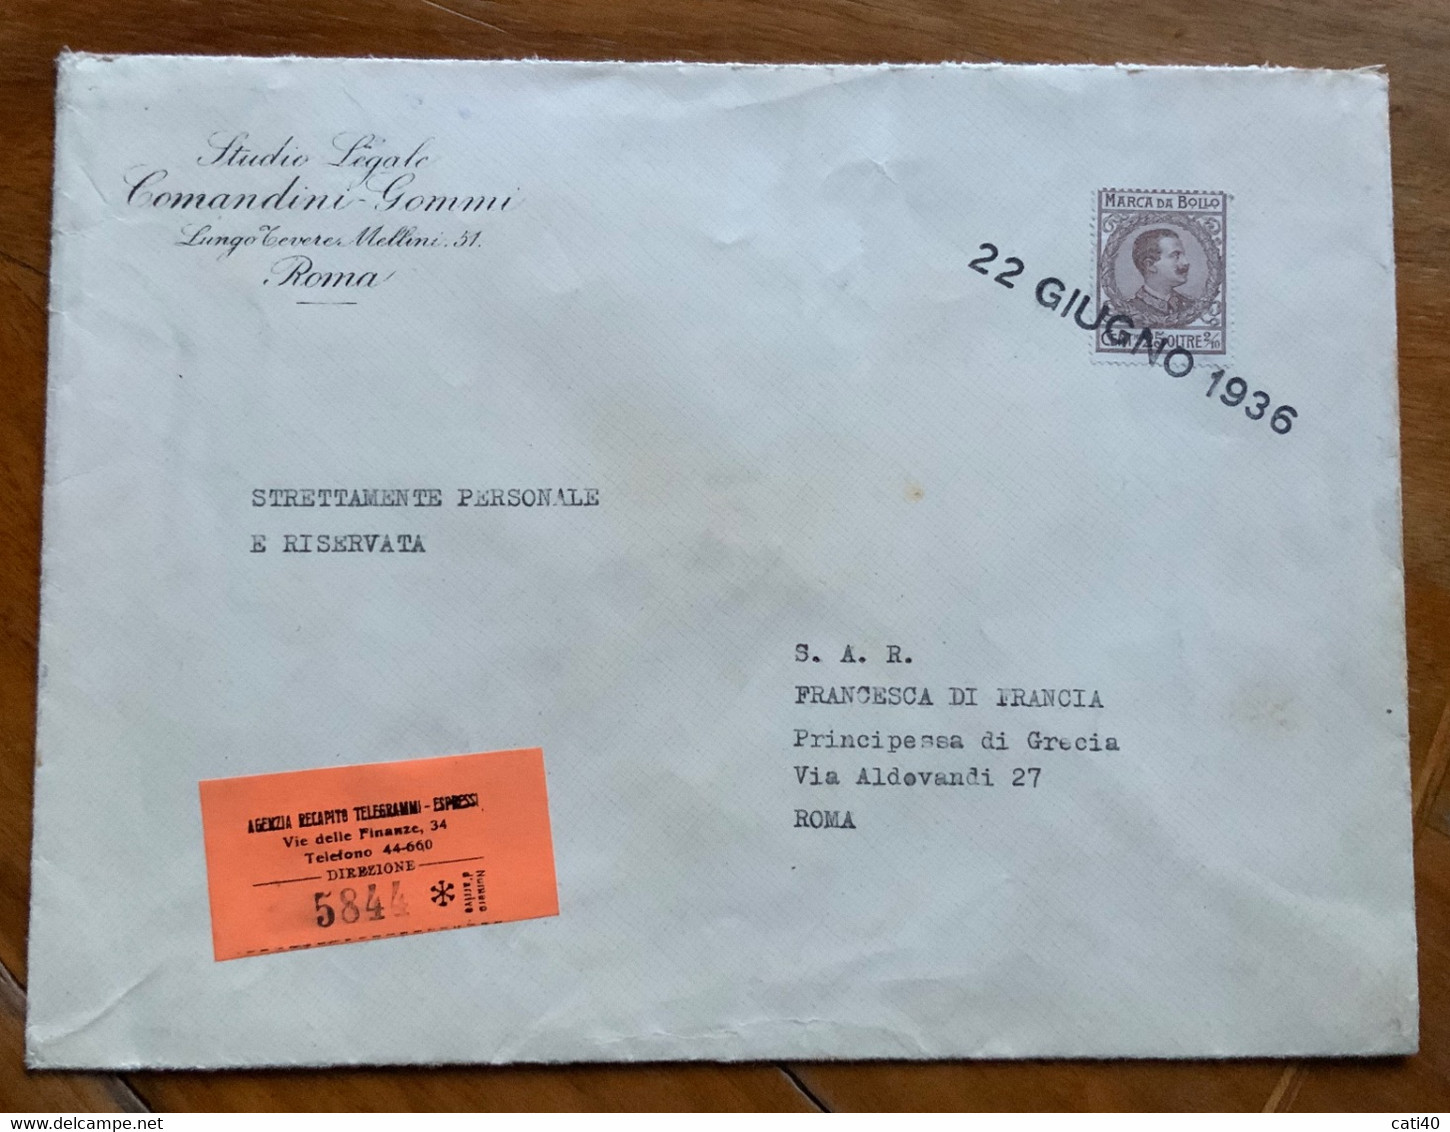 MARCA DA BOLLO Come FRANCOBOLLO R.A.  - Per S.A.R.FRANCESCA DI FRANCIA  PRINCIPESSA DI GRECIA - ROMA - 22 GIUGNO 1936 - Steuermarken